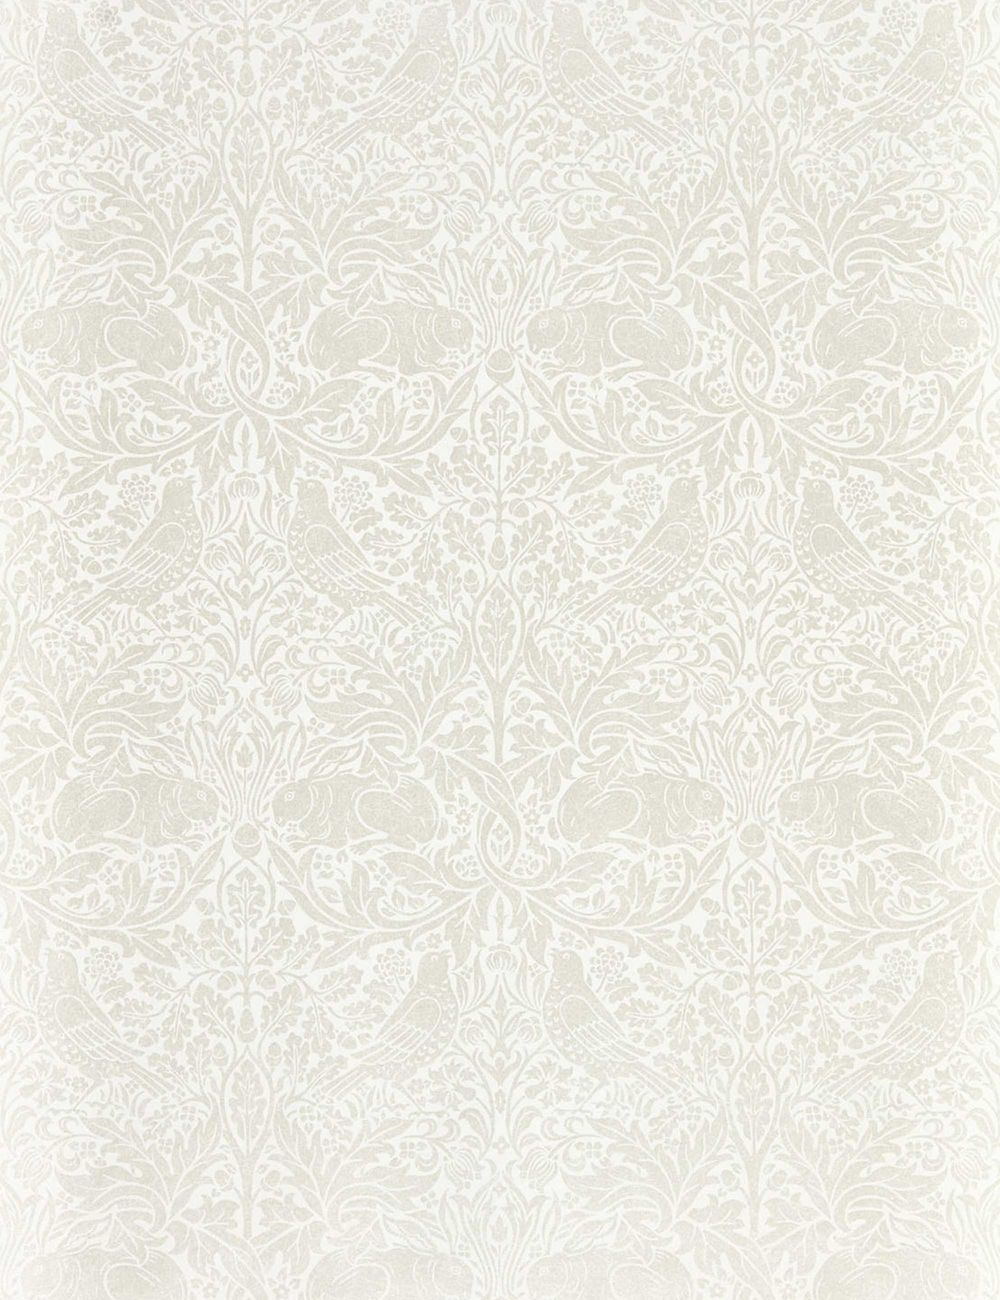 MORRIS & CO. PURE BRER RABBIT WALLPAPER, WHITE CLOVER - Image 0